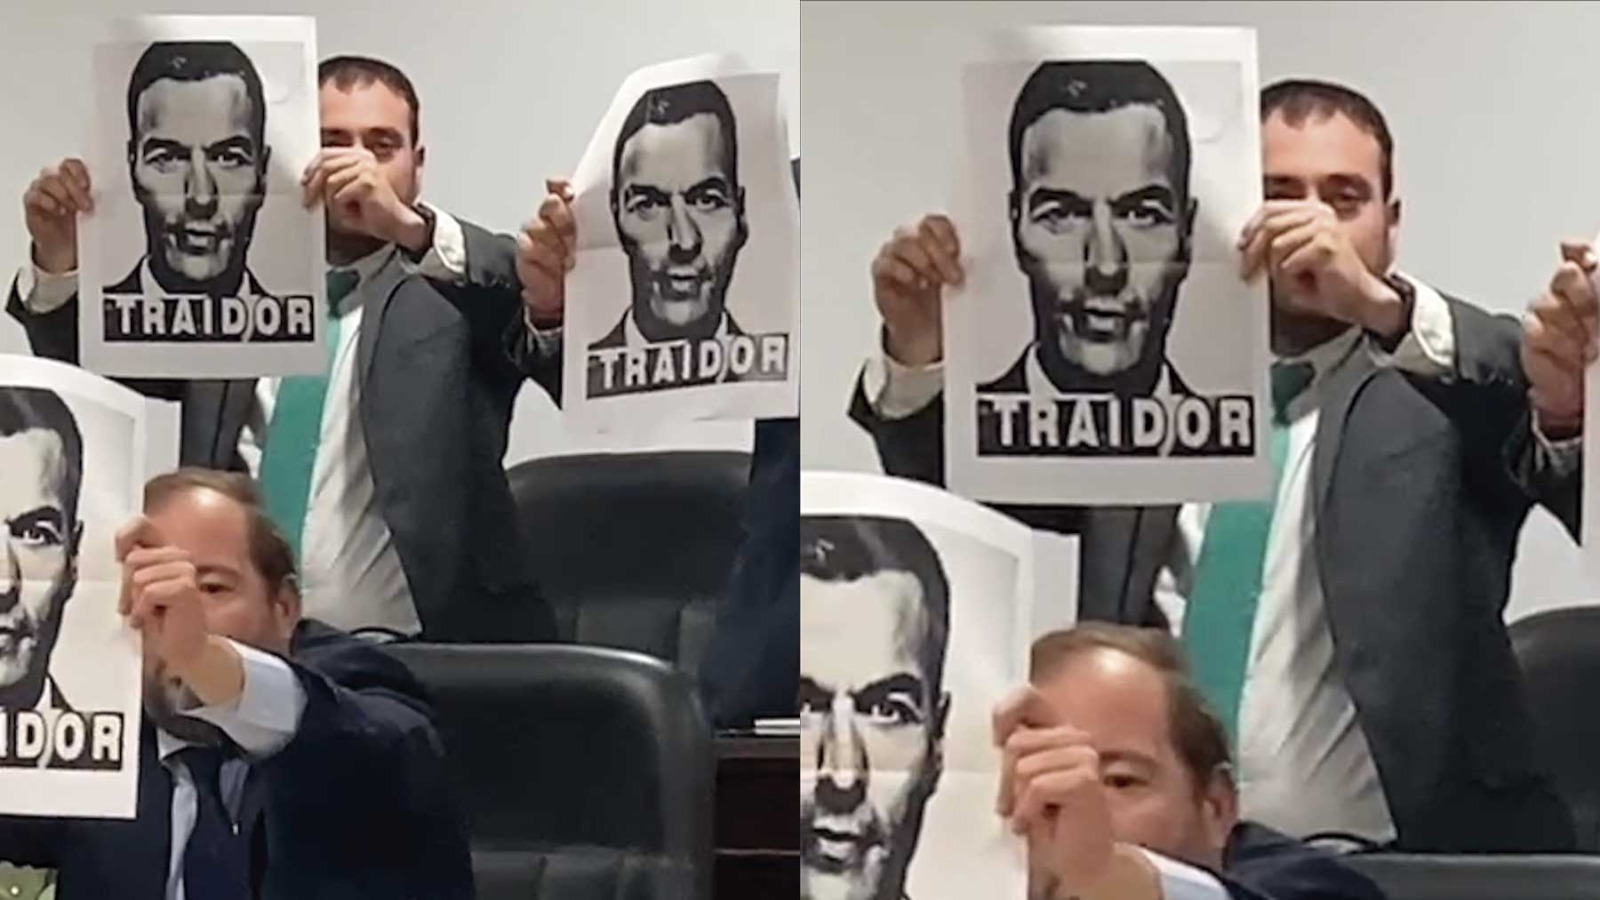 Concejales de Vox con carteles de «Sánchez traidor» en el pleno del Ayuntamiento de San Juan de Aznalfarache.